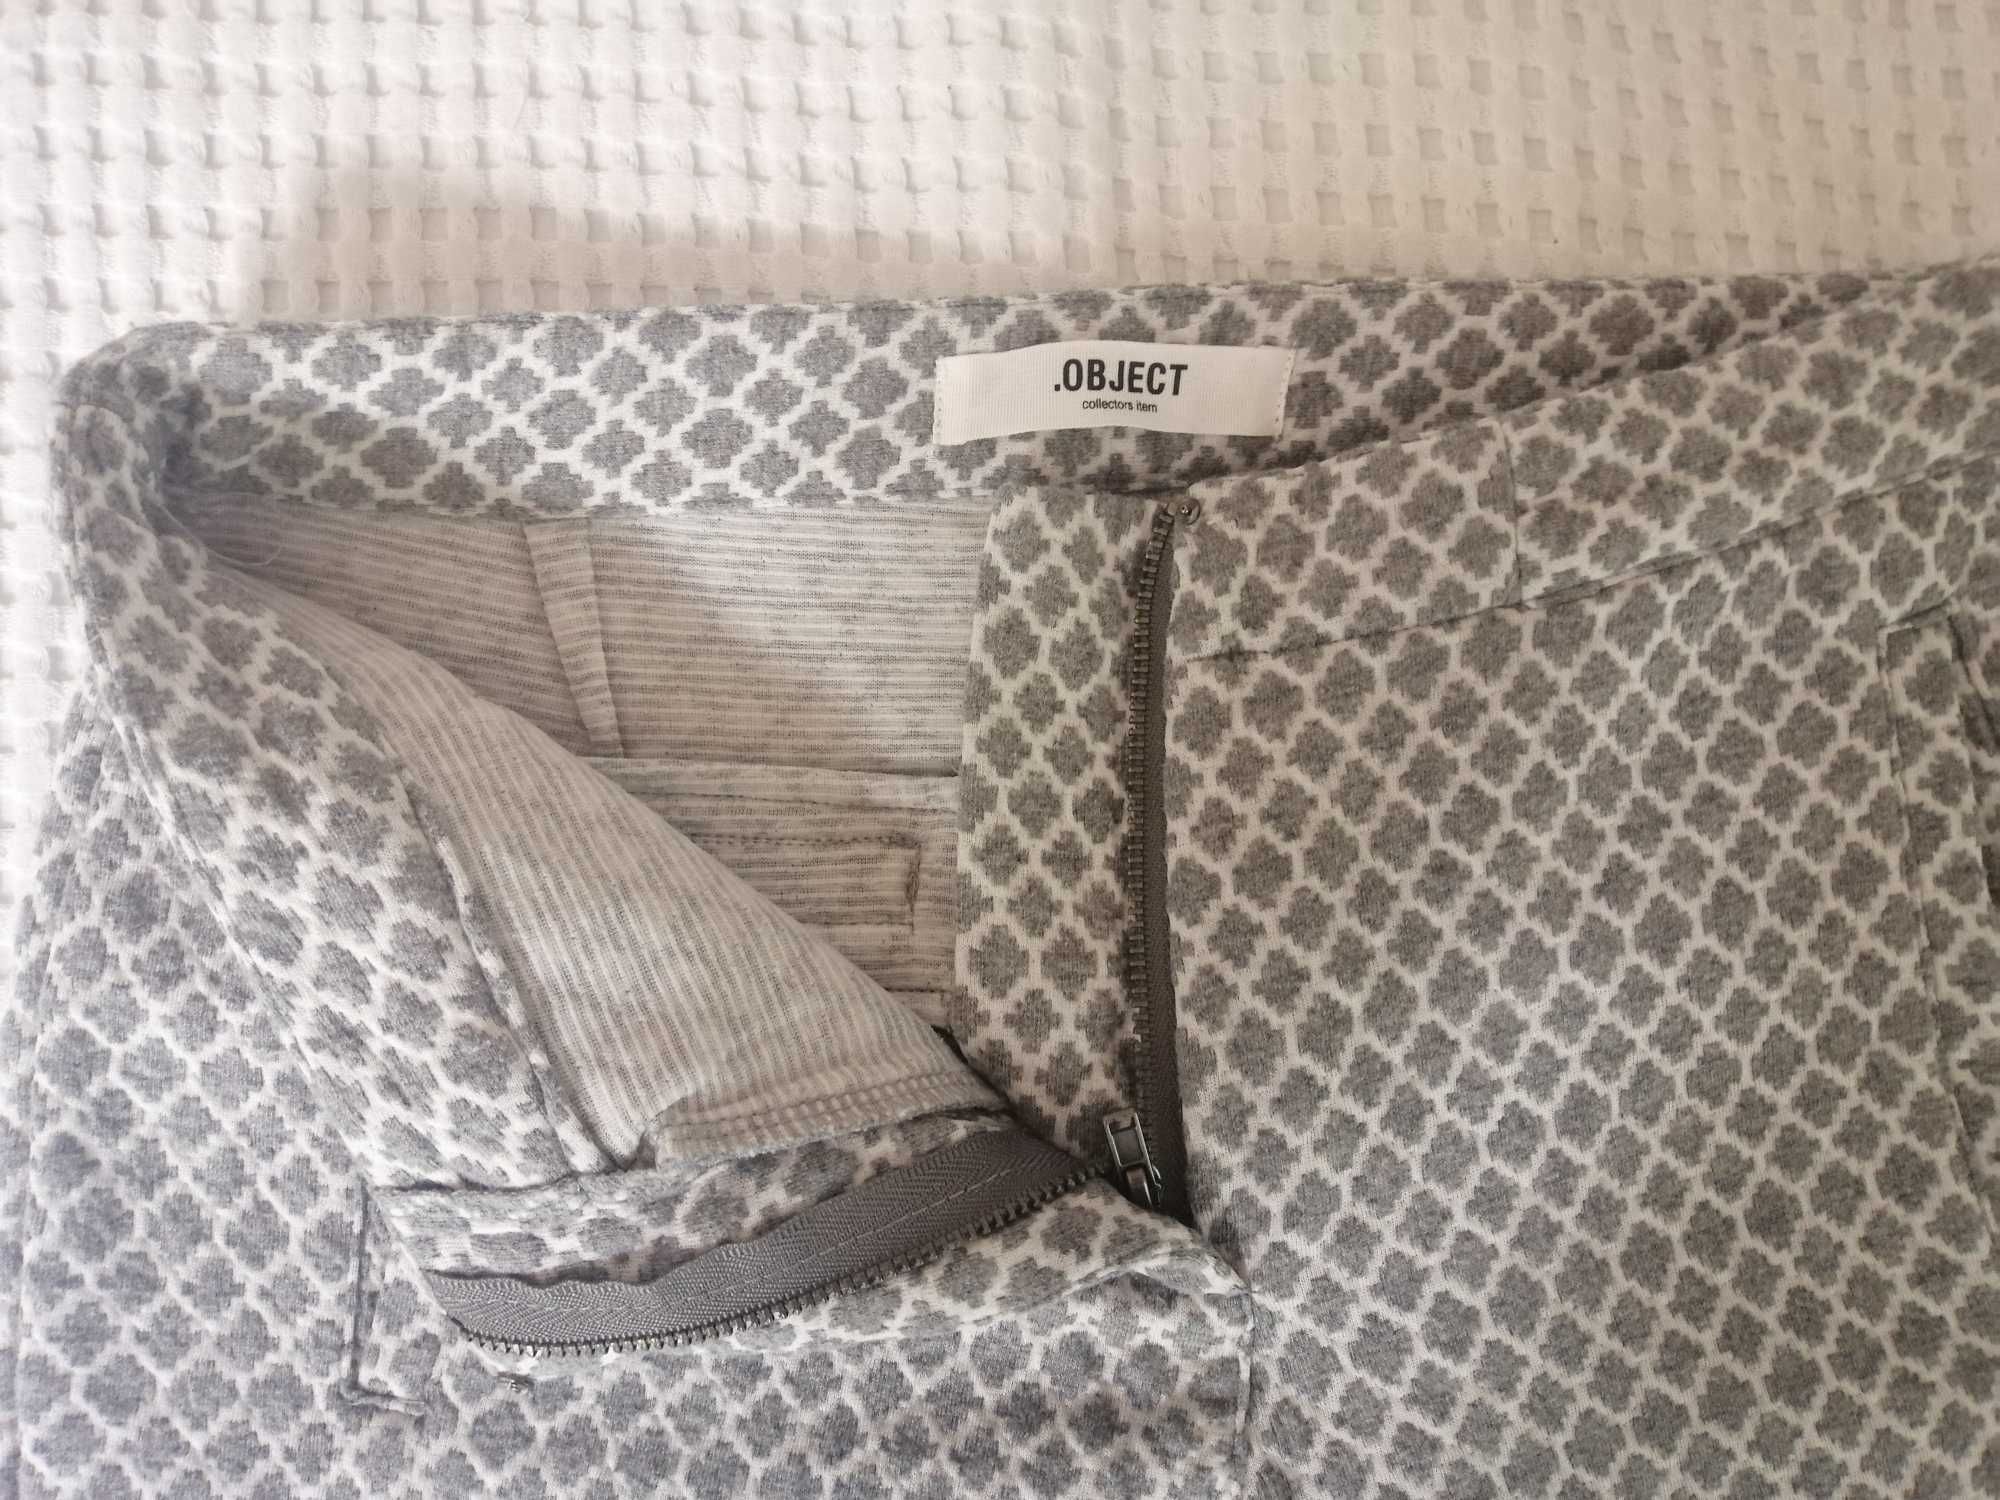 spodnie Object, S, marokańska koniczyna, jak nowe, wąska nogawka